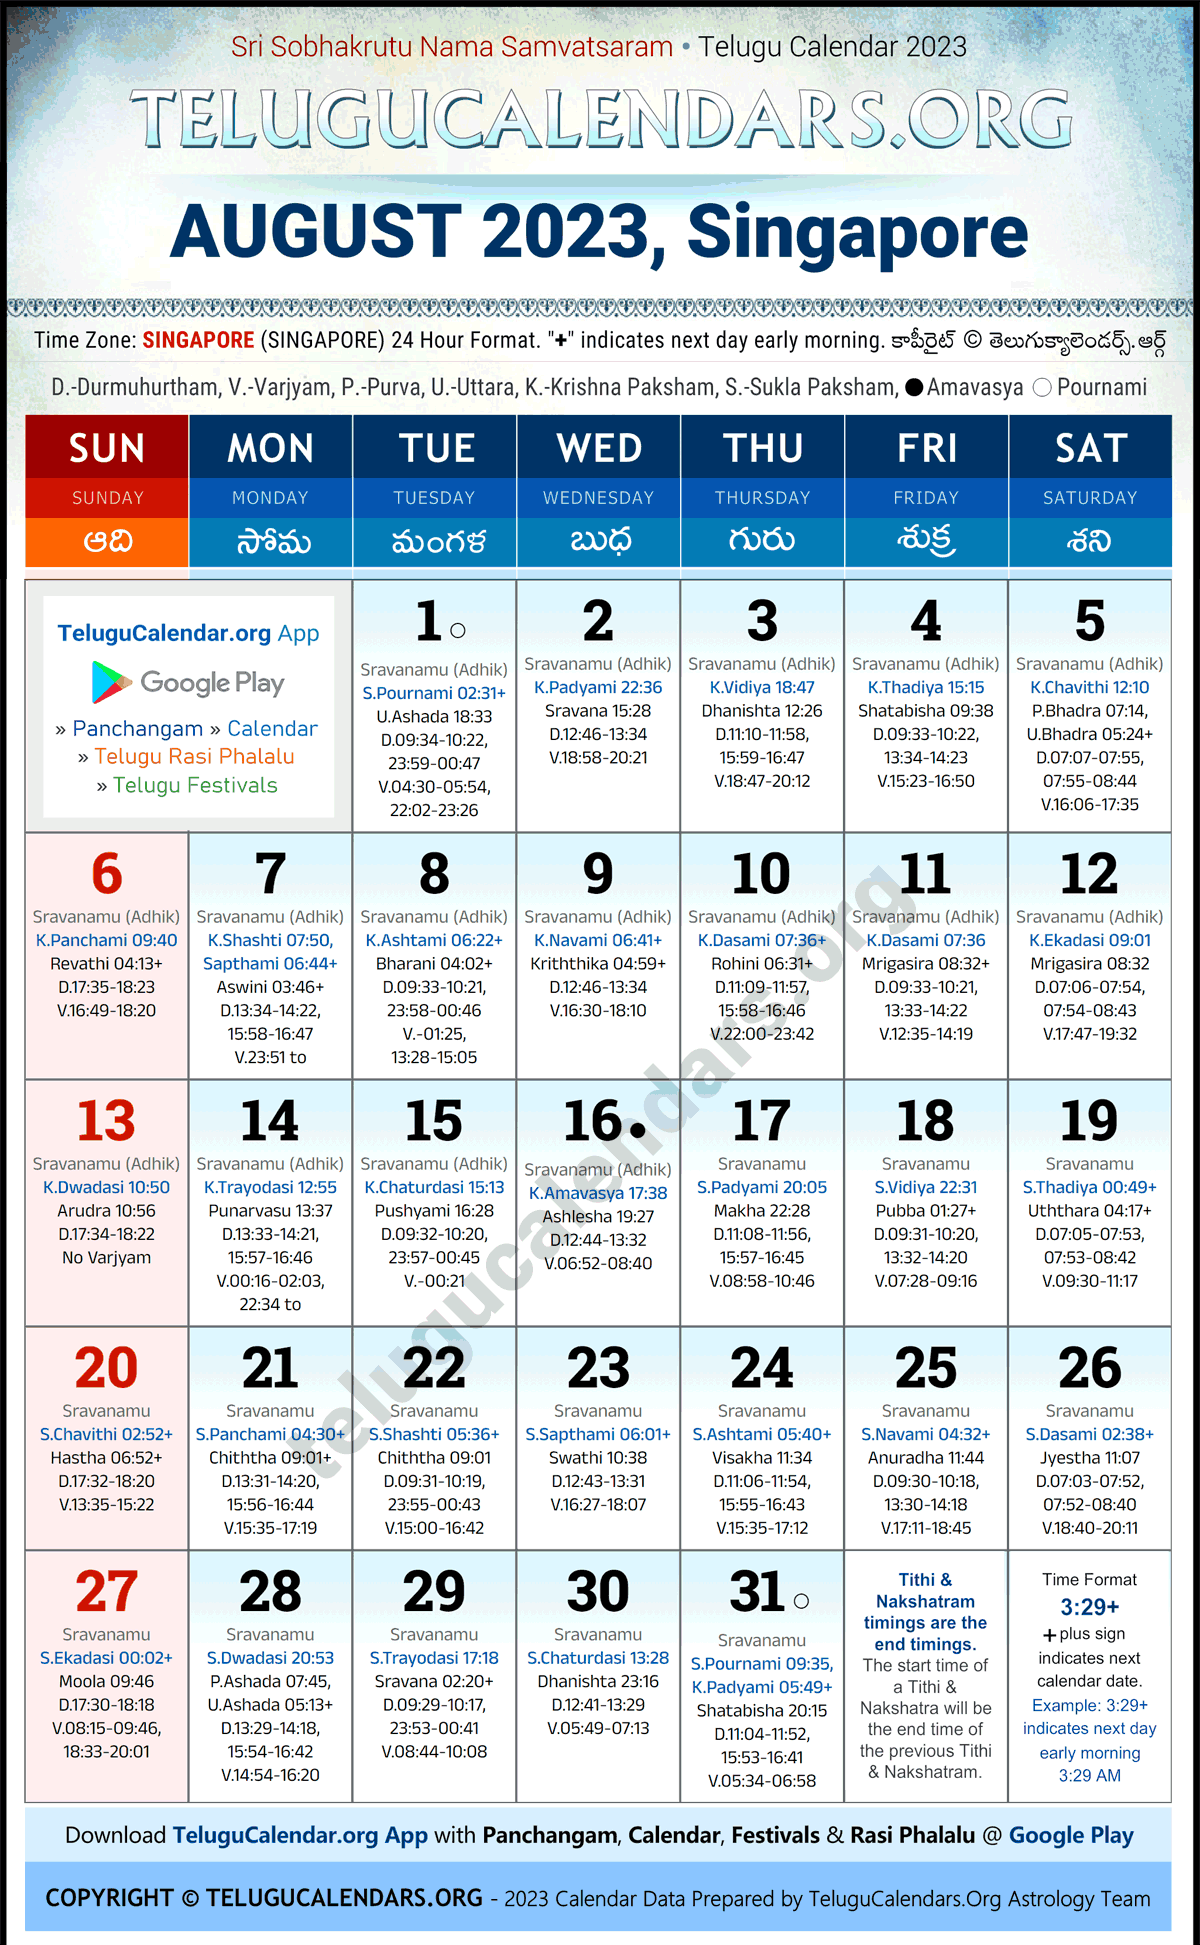 Telugu Calendar 2023 August Festivals for Singapore